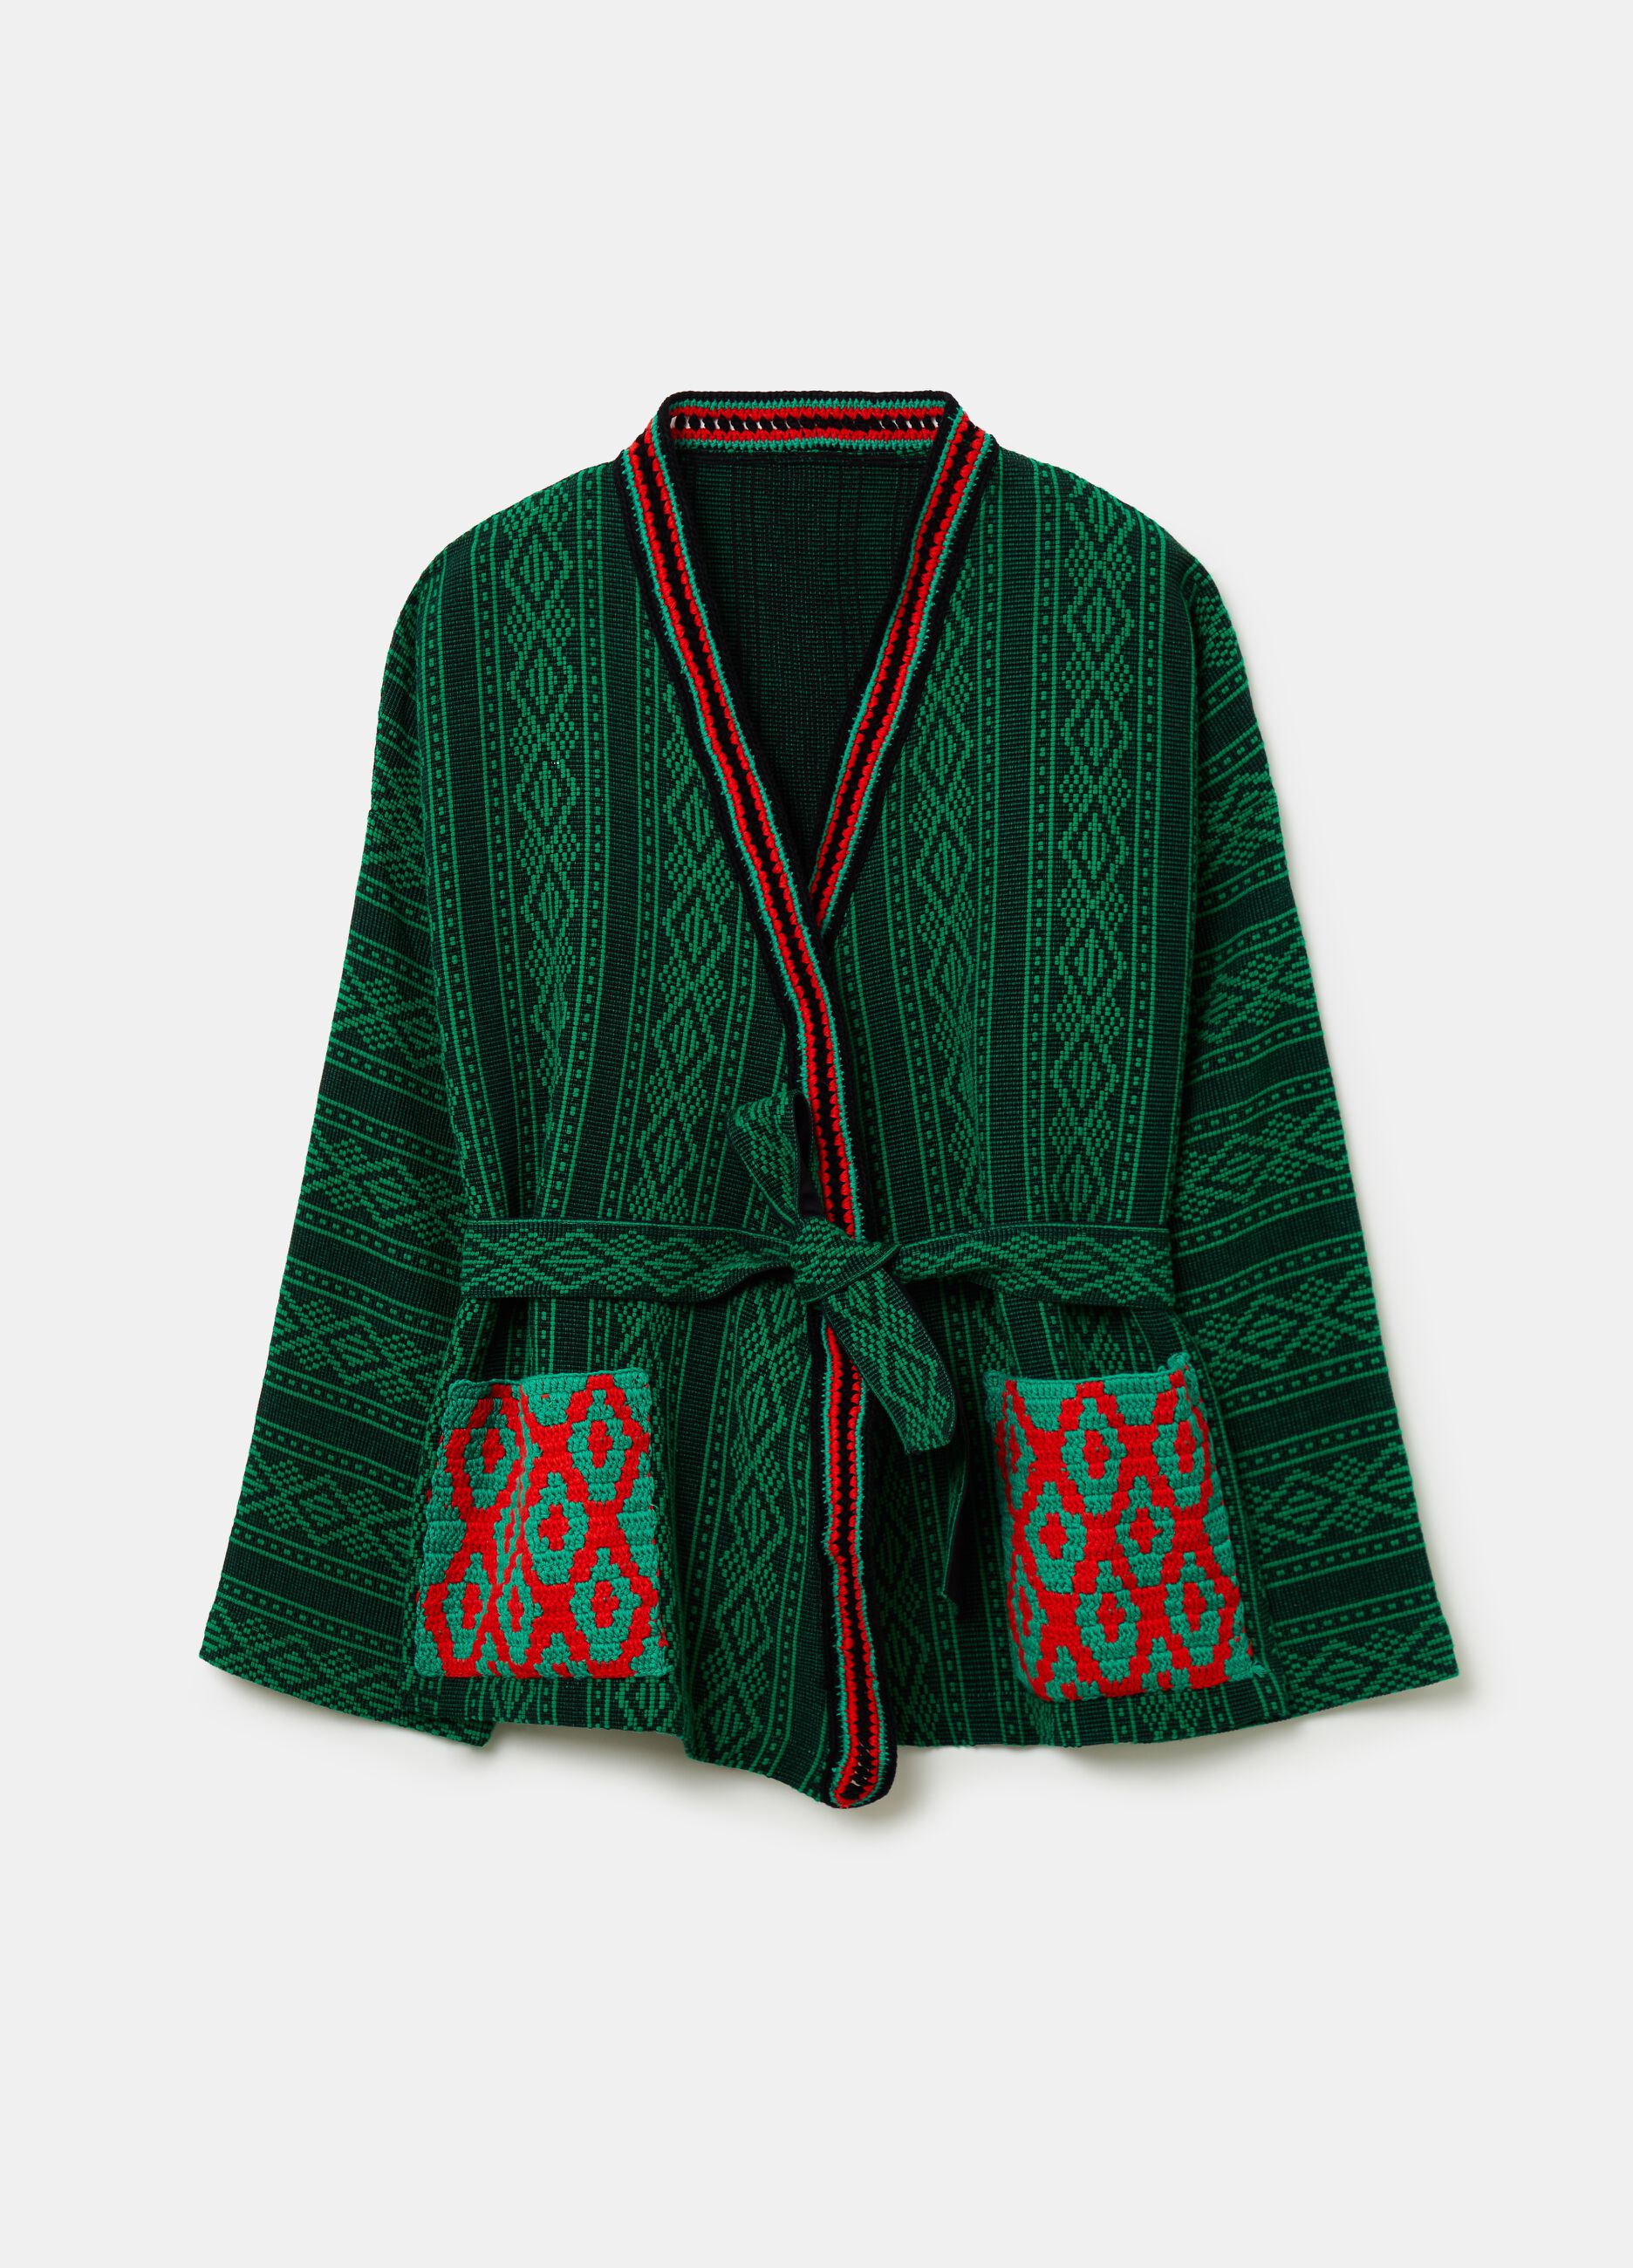 Kimono with ethnic designs